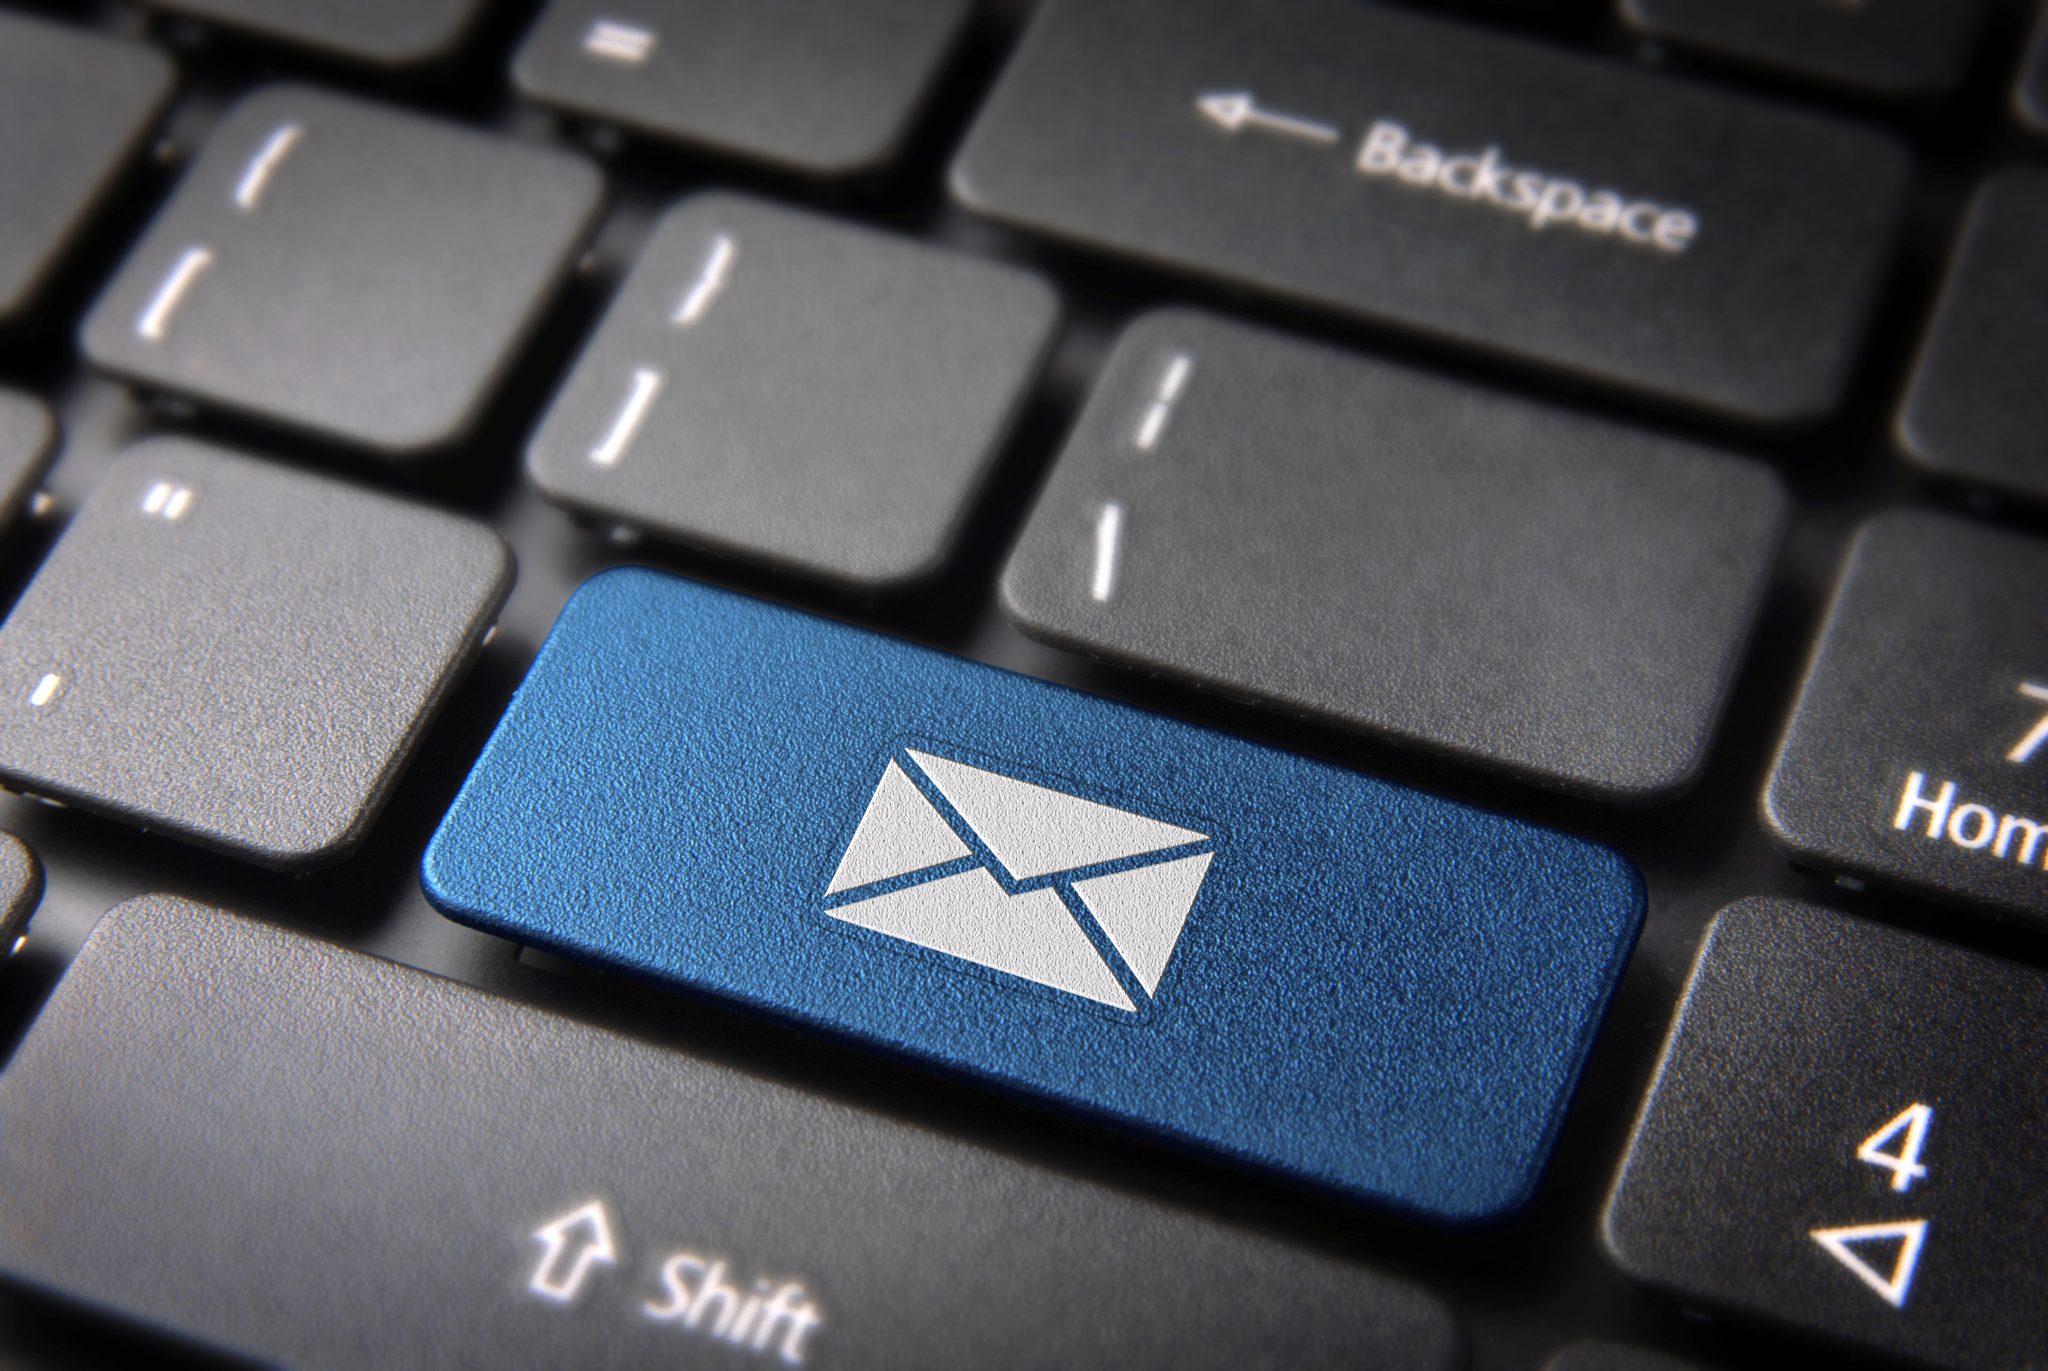 Kuidas kontrollida, kas e-post on turvaline ja kas see ei peta pettusi?